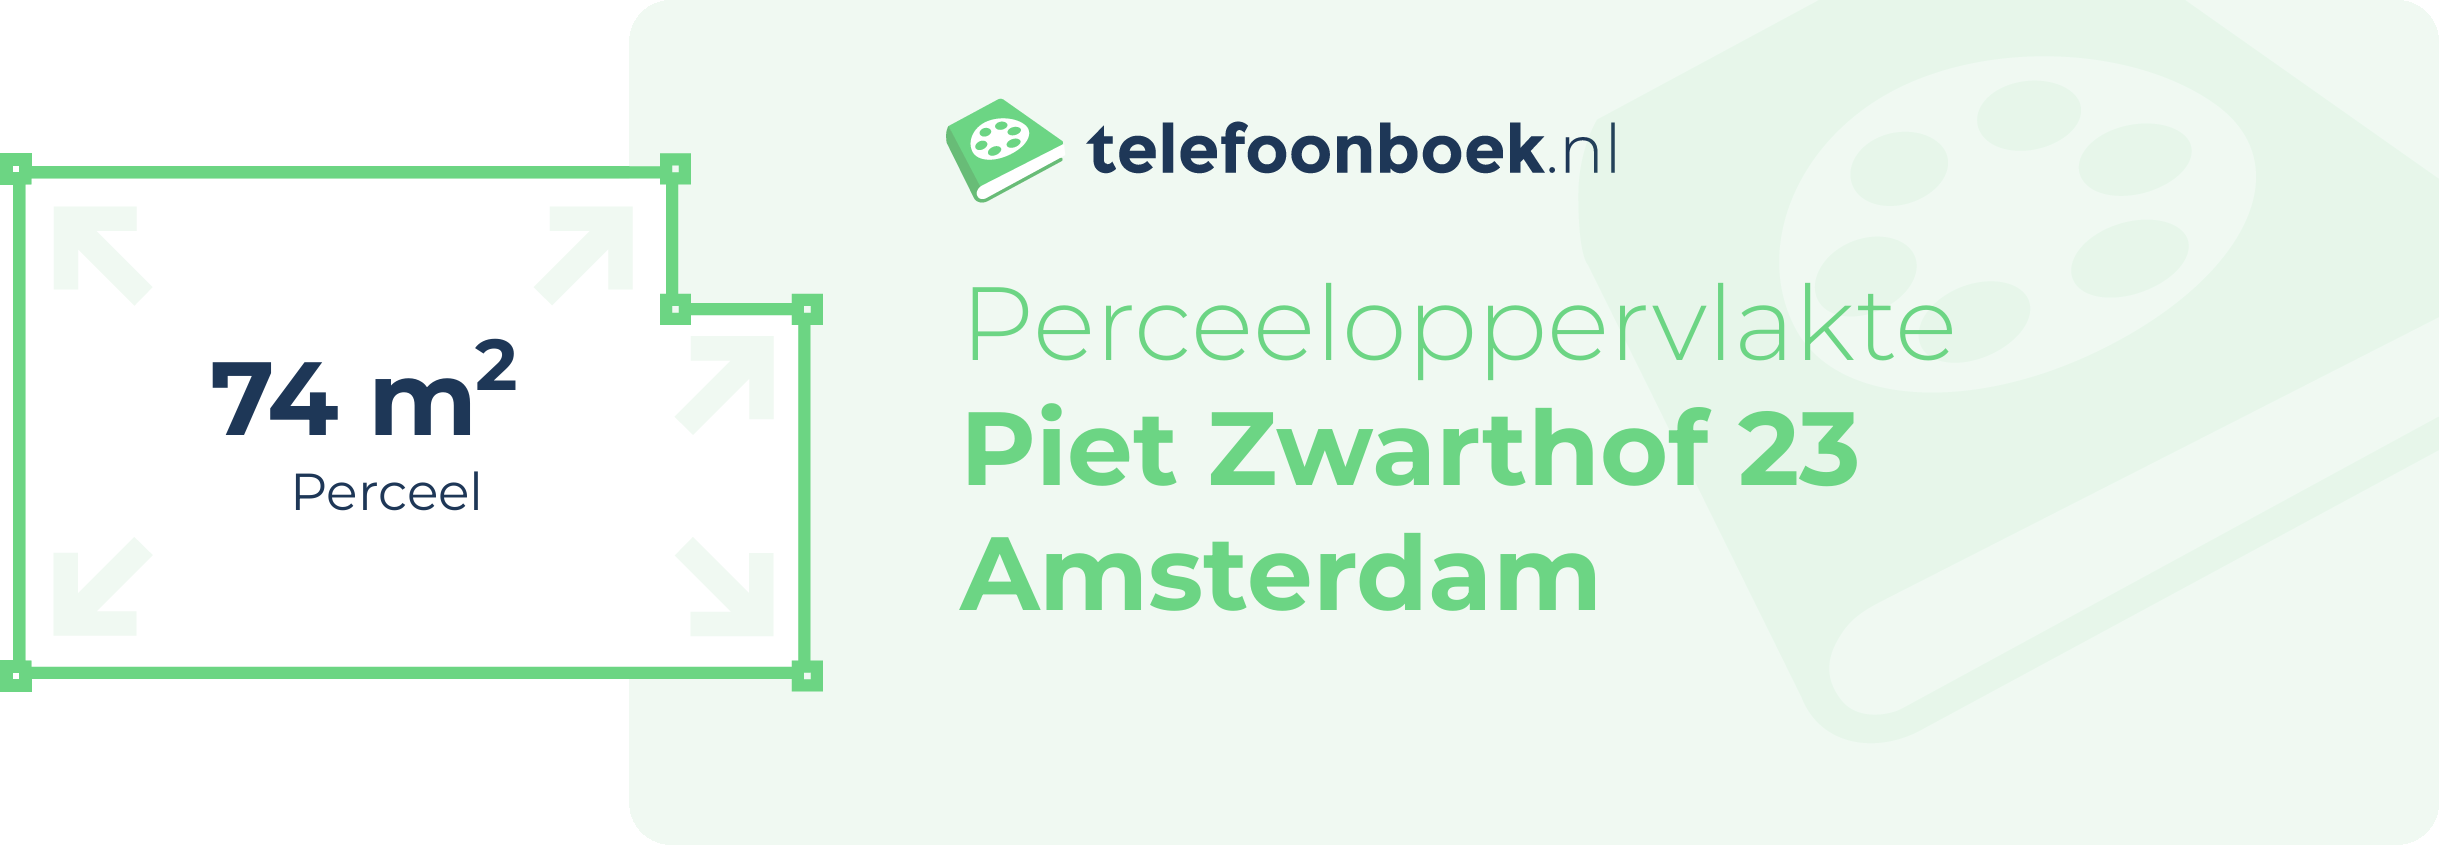 Perceeloppervlakte Piet Zwarthof 23 Amsterdam